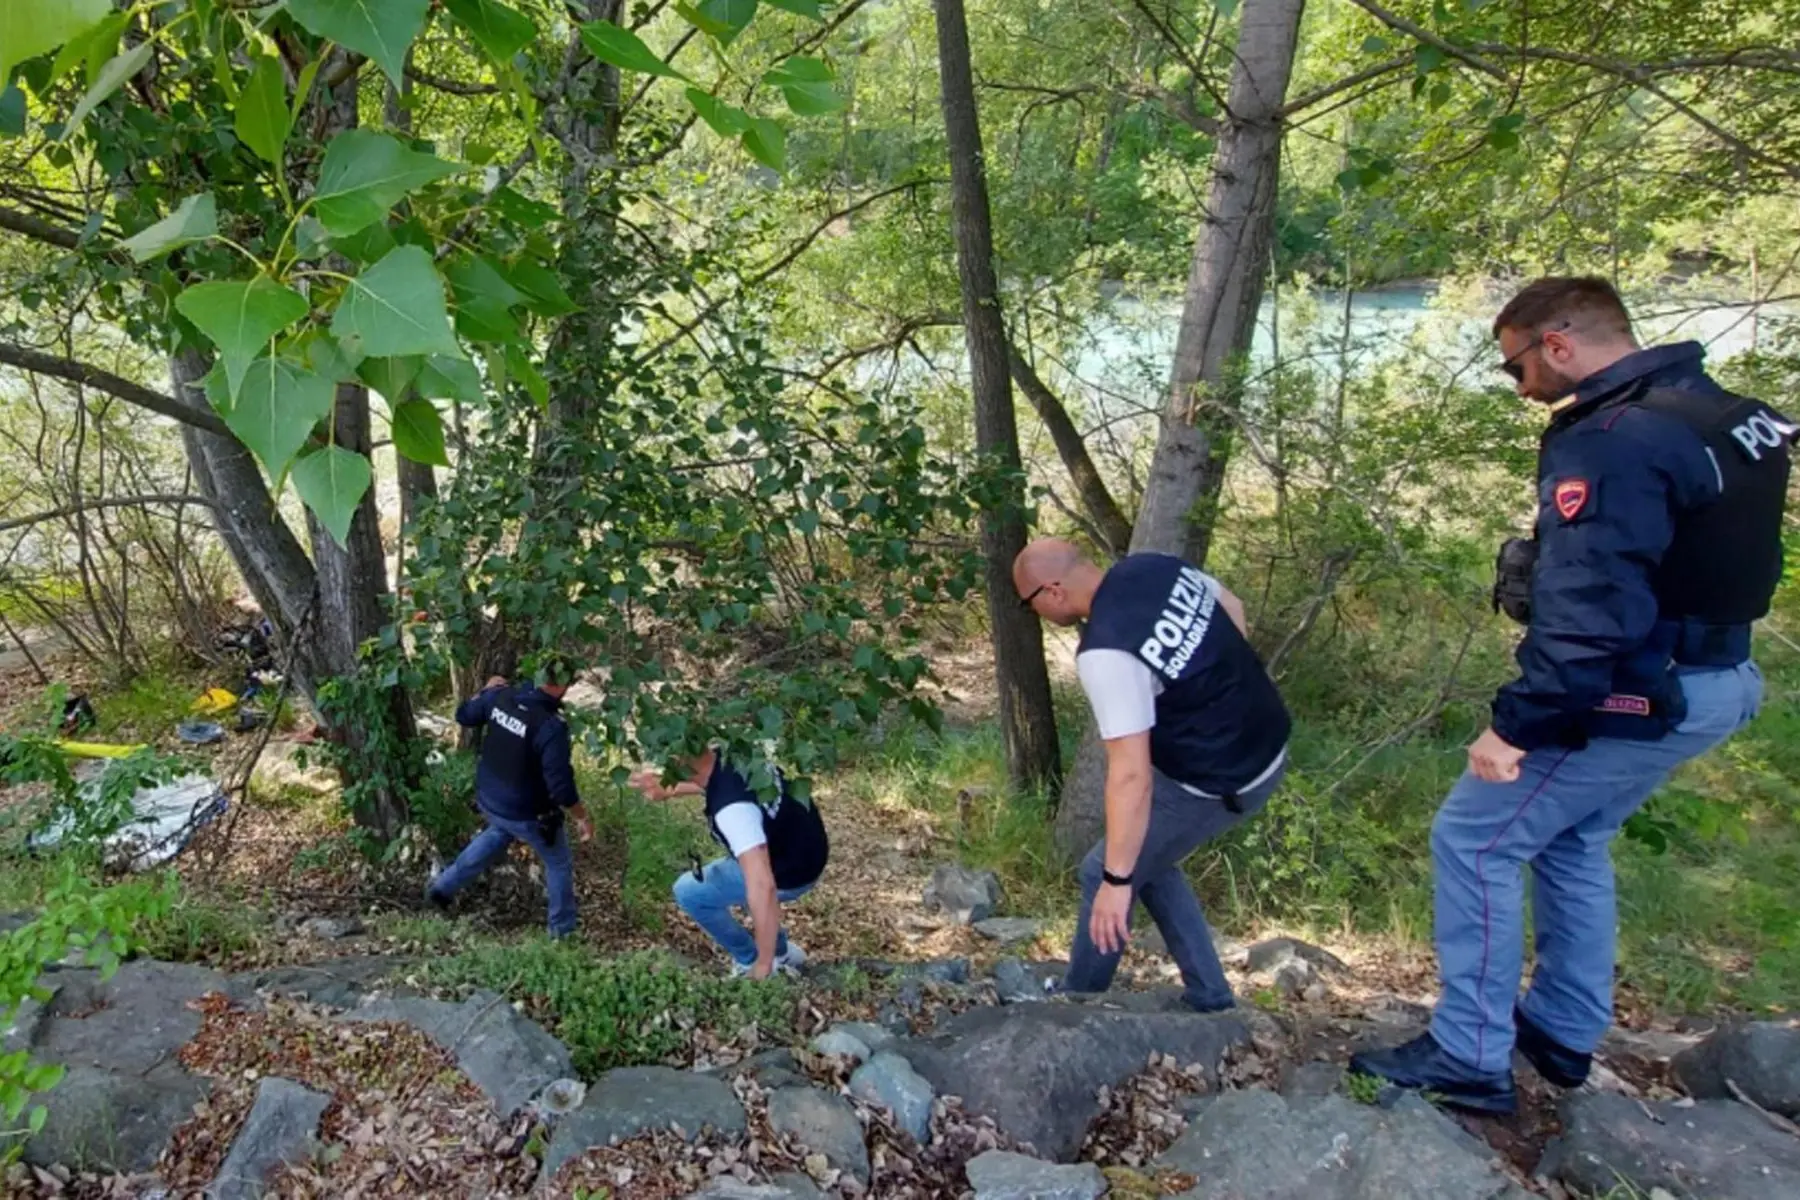 La polizia sul luogo dove una donna è stata trovata morta sepolta in una fossa alla periferia di Aosta, 1 giugno 2022. ANSA/Sara Sergi